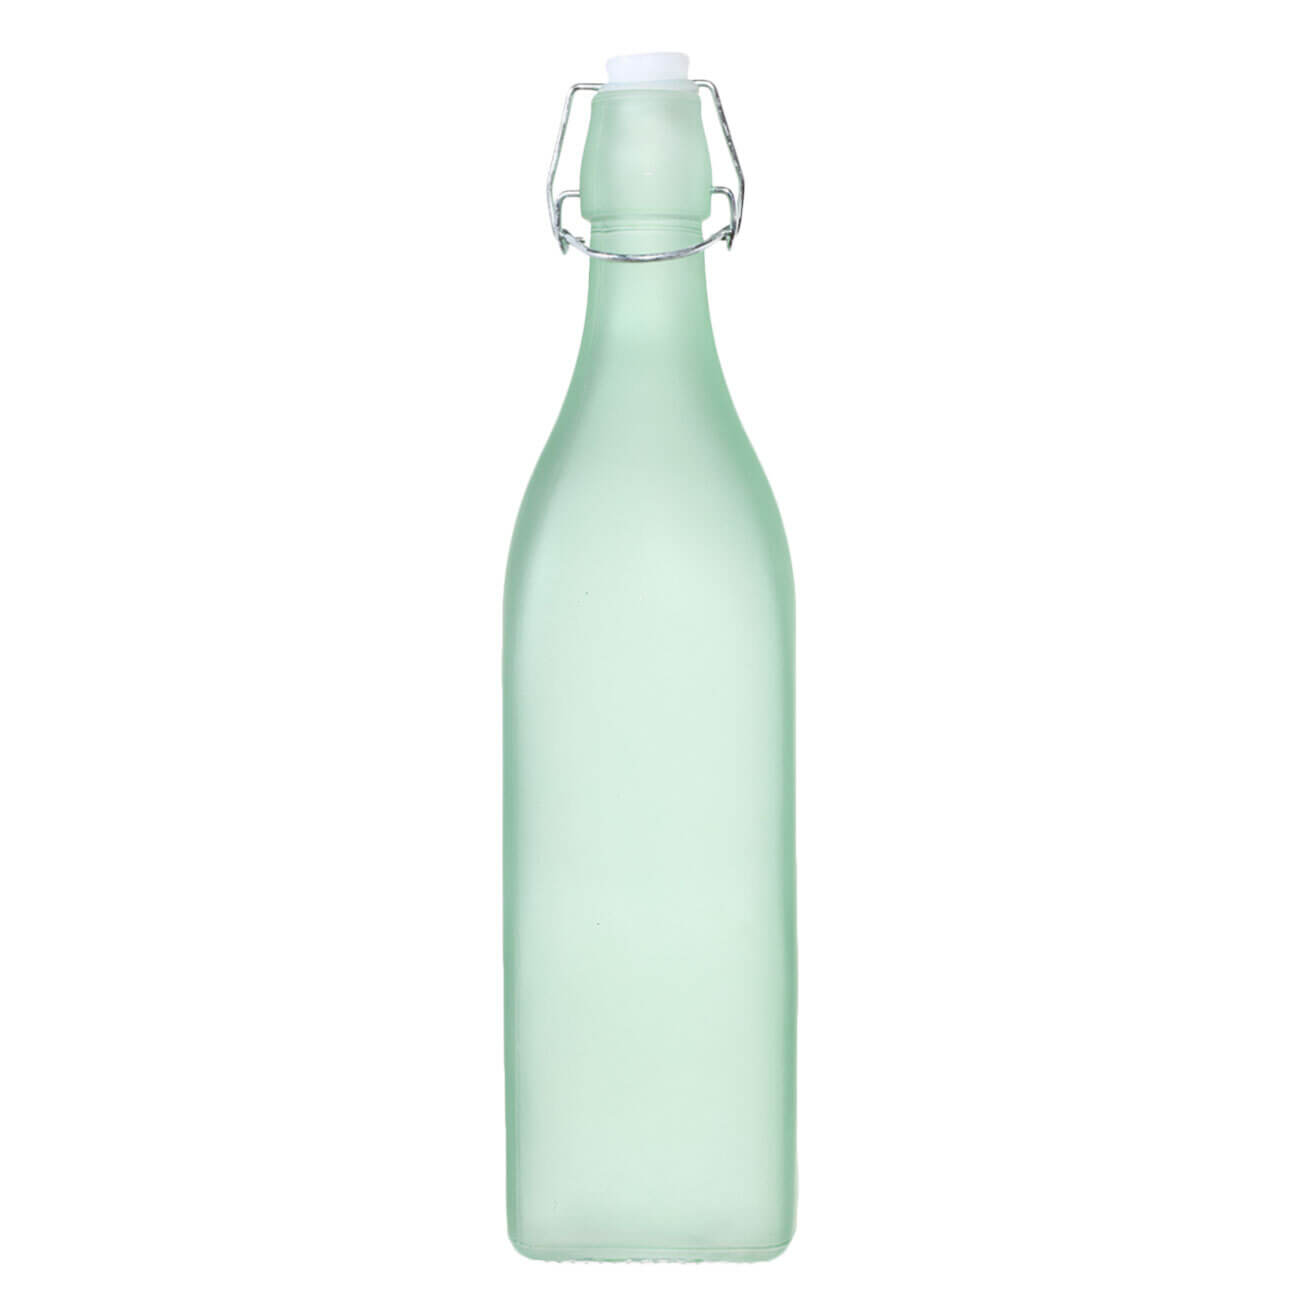 Бутылка для масла или уксуса, 1 л, с клипсой, стекло/металл, зеленая, Light kitchen